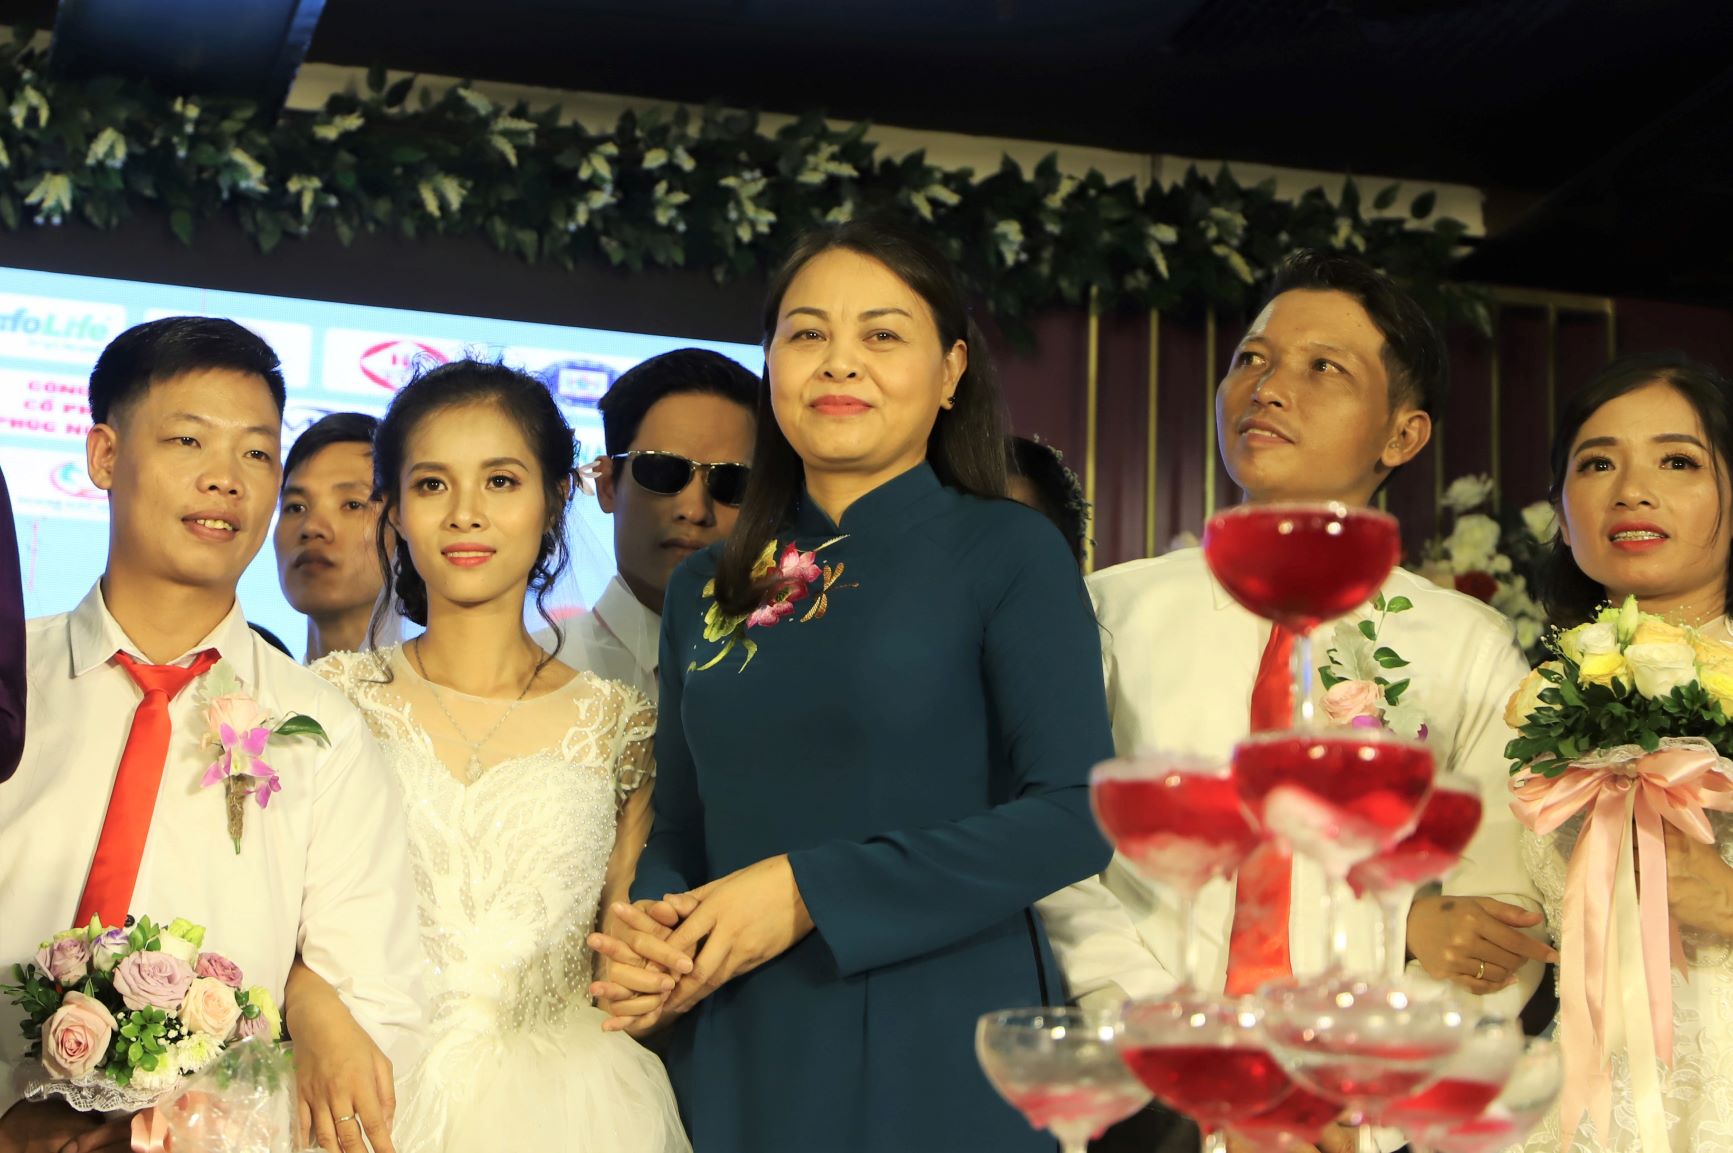 Bà Nguyễn Thị Thu Hà lên sân khấu chúc mừng hạnh phúc các cặp đôi. Nhân dịp này, bà gửi tặng quà cưới là 1 triệu đồng tới mỗi cặp đôi cô dâu, chú rể.